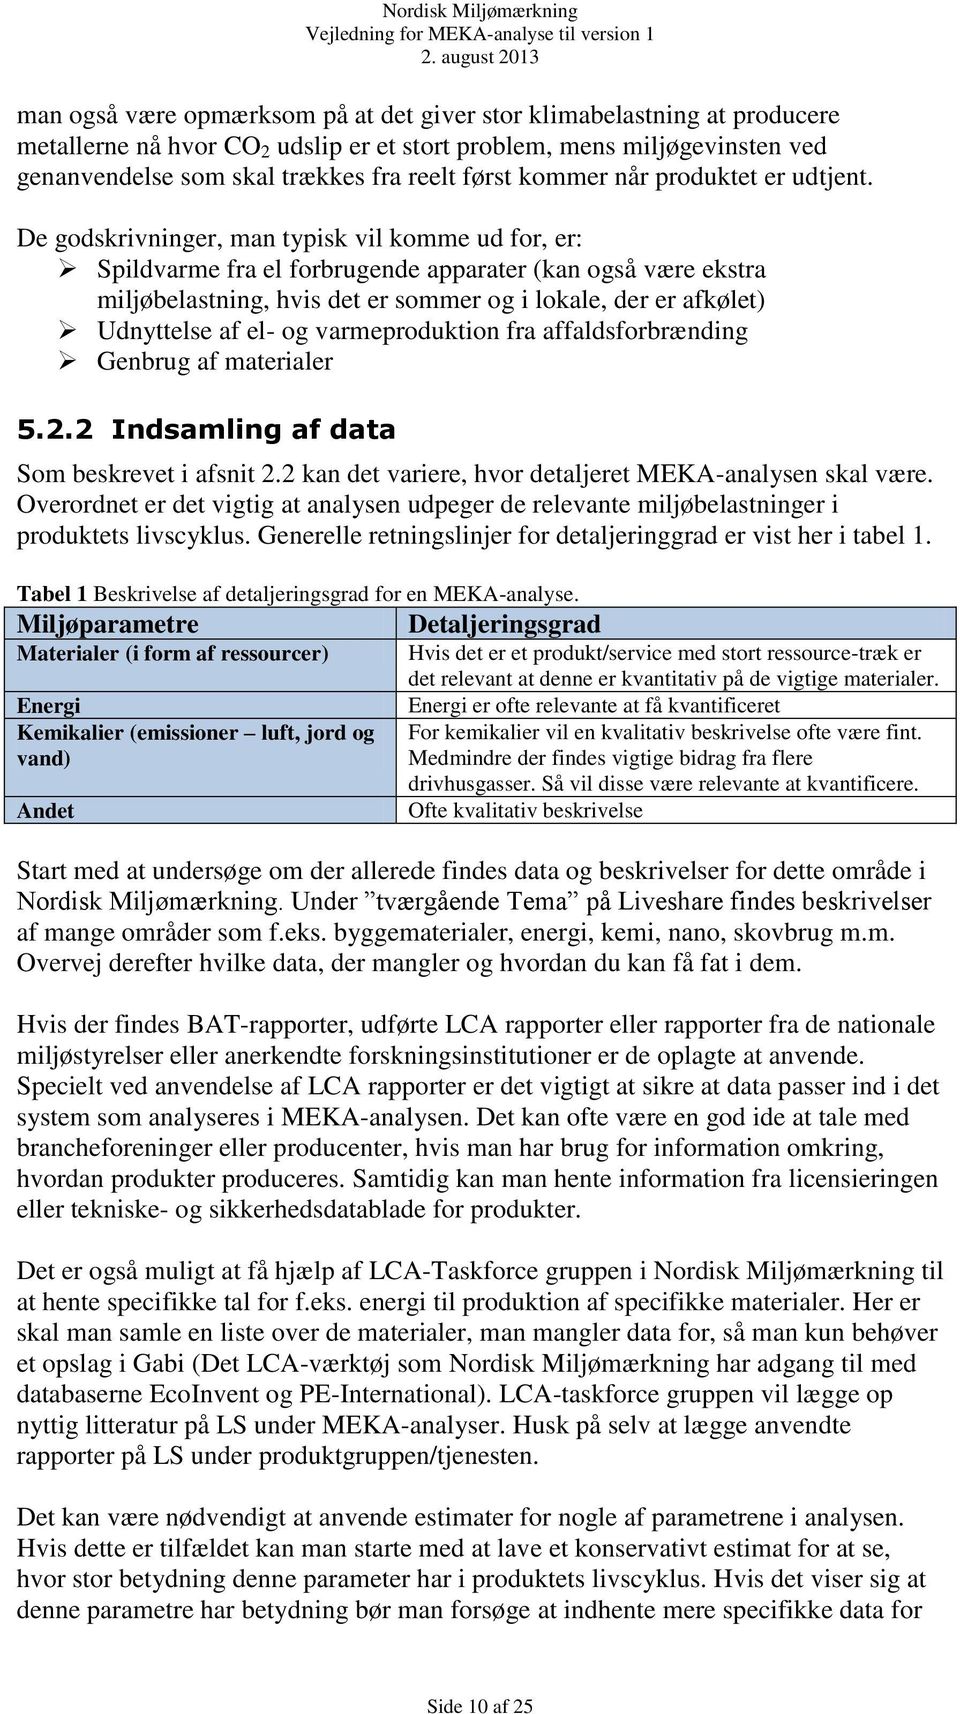 MEKA vejledning for Nordisk Miljømærkning - PDF Gratis download